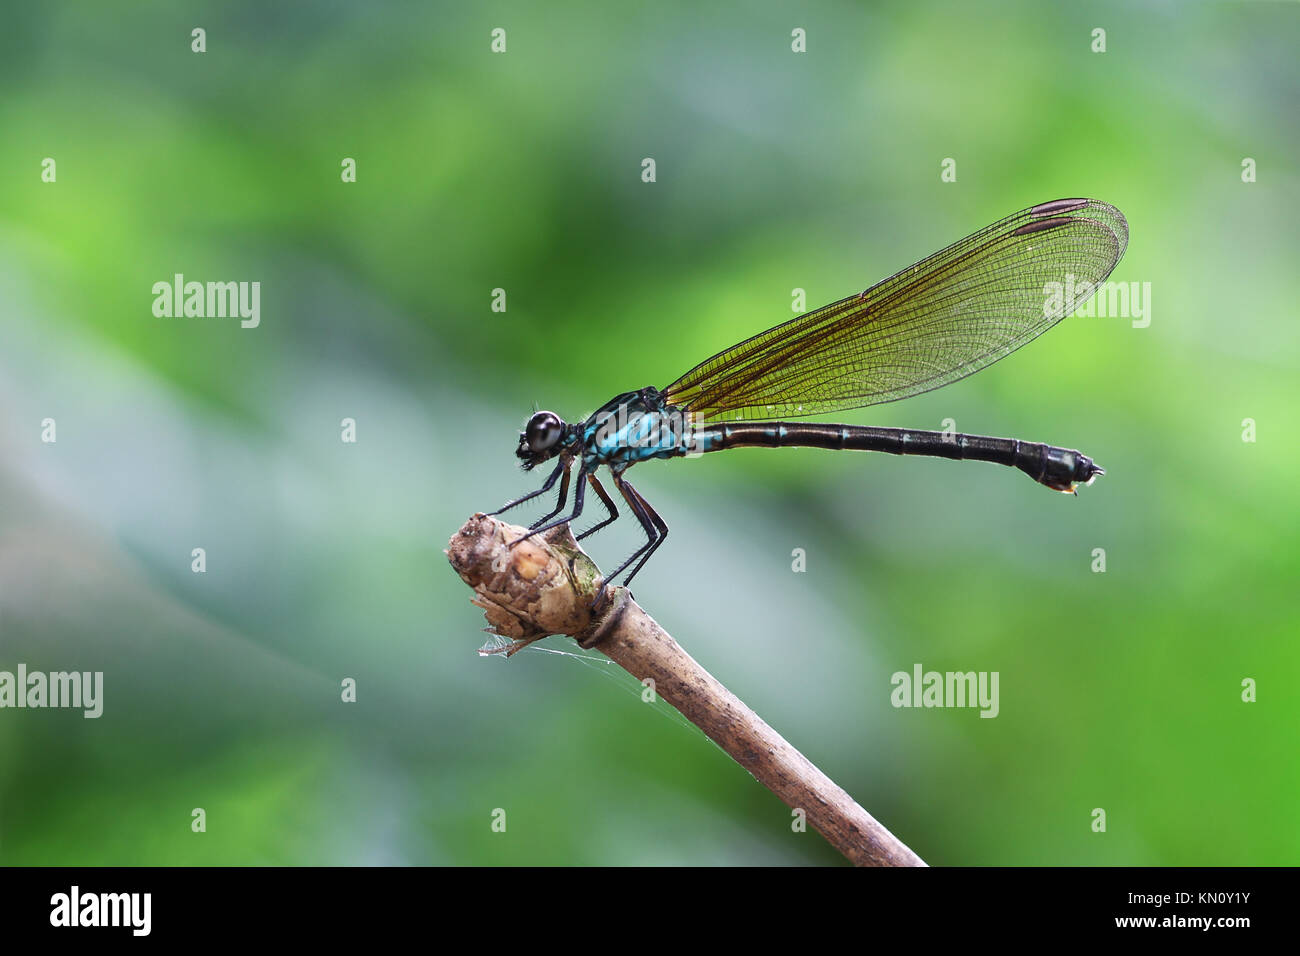 Damselfy bleu/Dragon Fly/Zygoptera assis sur le bord de la tige de bambou Banque D'Images